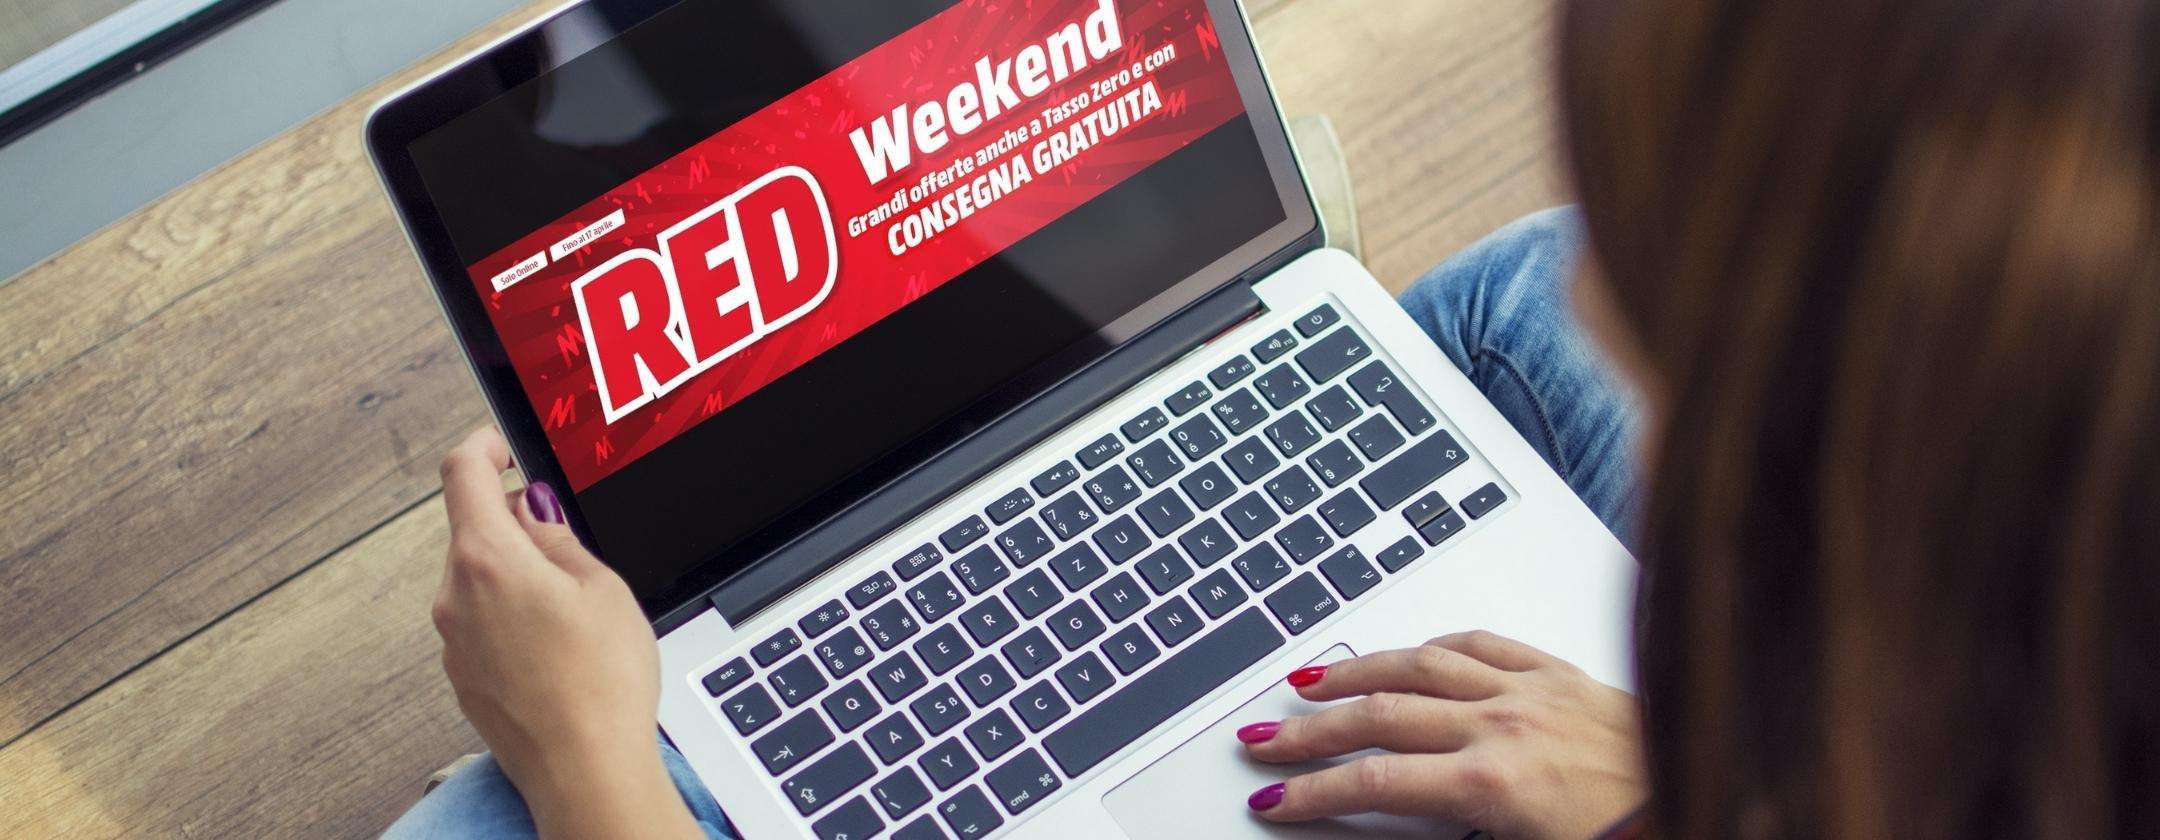 MediaWorld RED Weekend: grandi offerte solo online e consegna gratuita